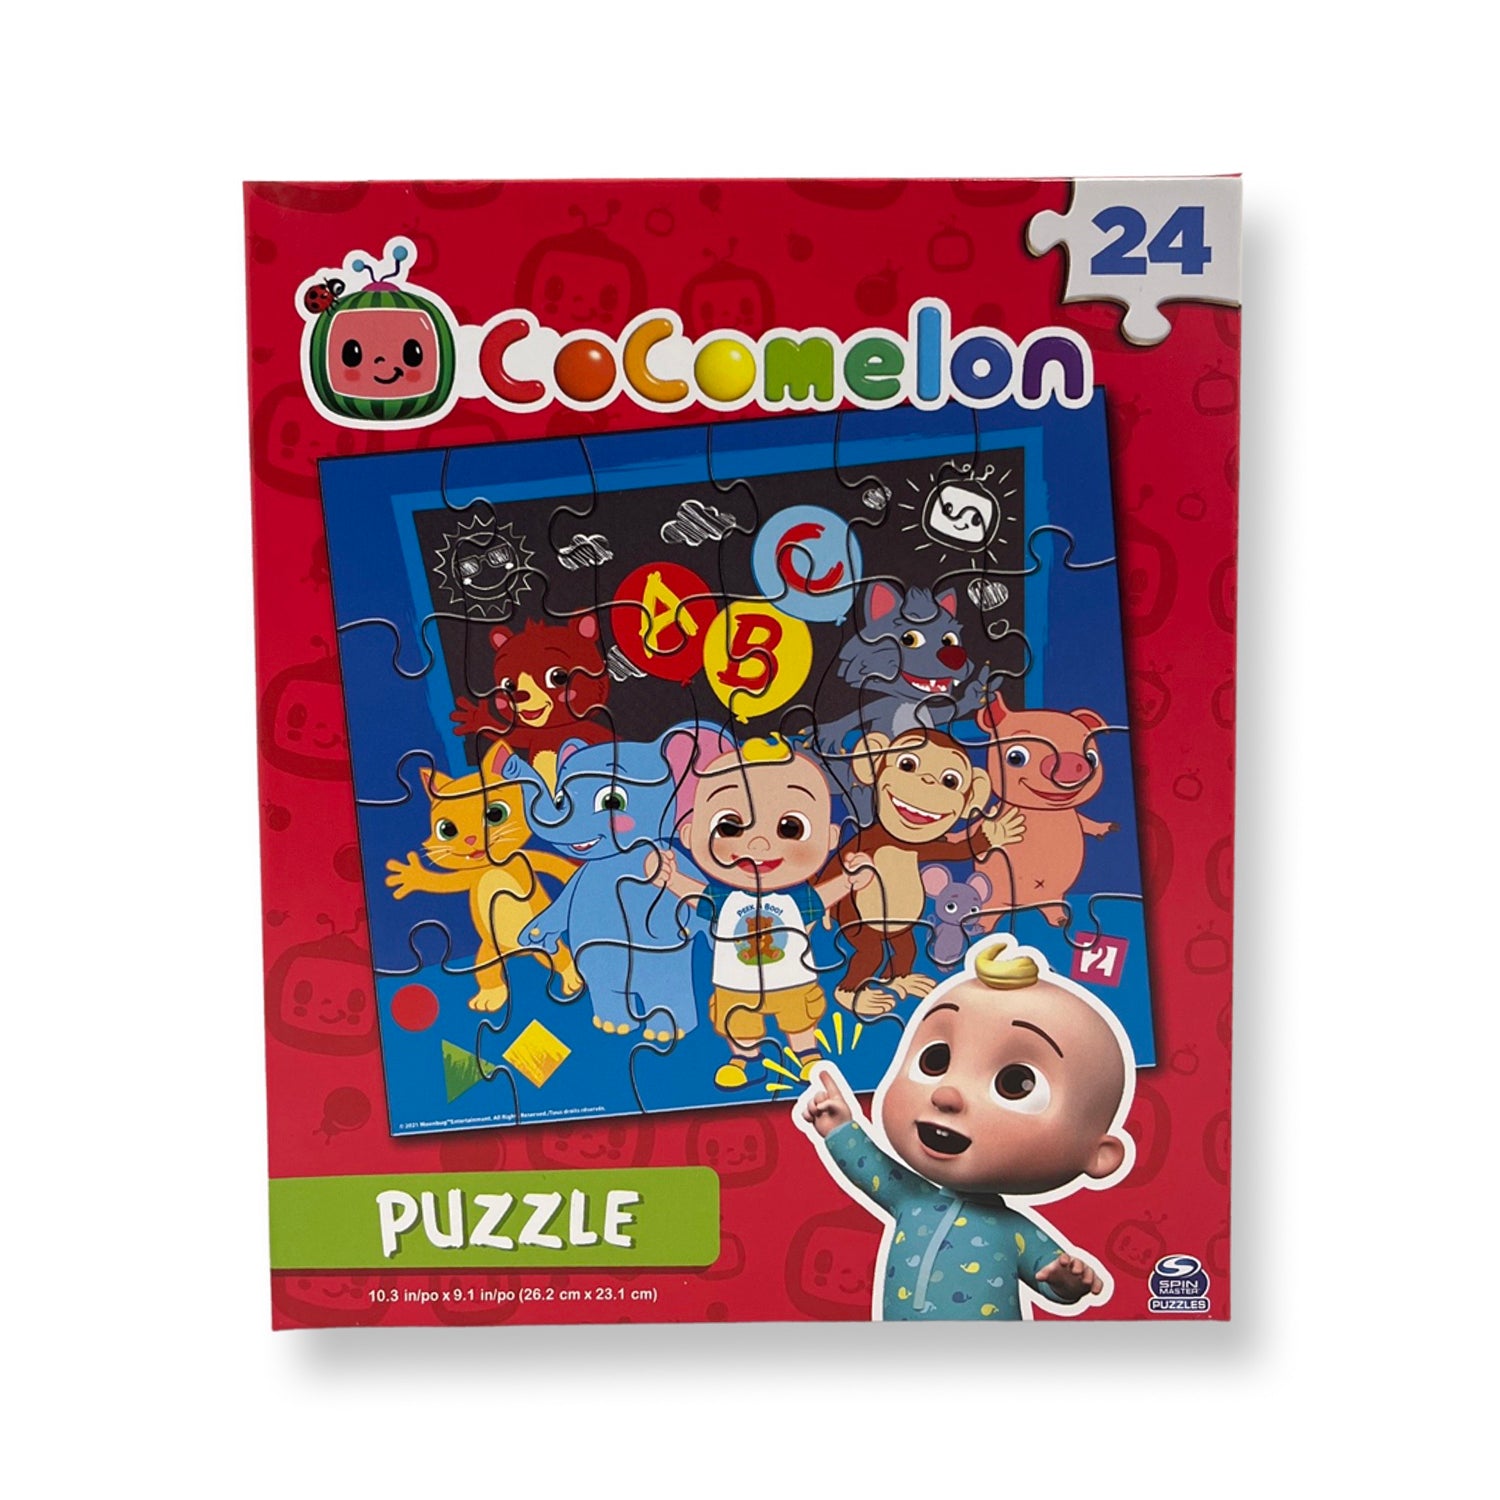 CoComelon 24 Piece Puzzle - School